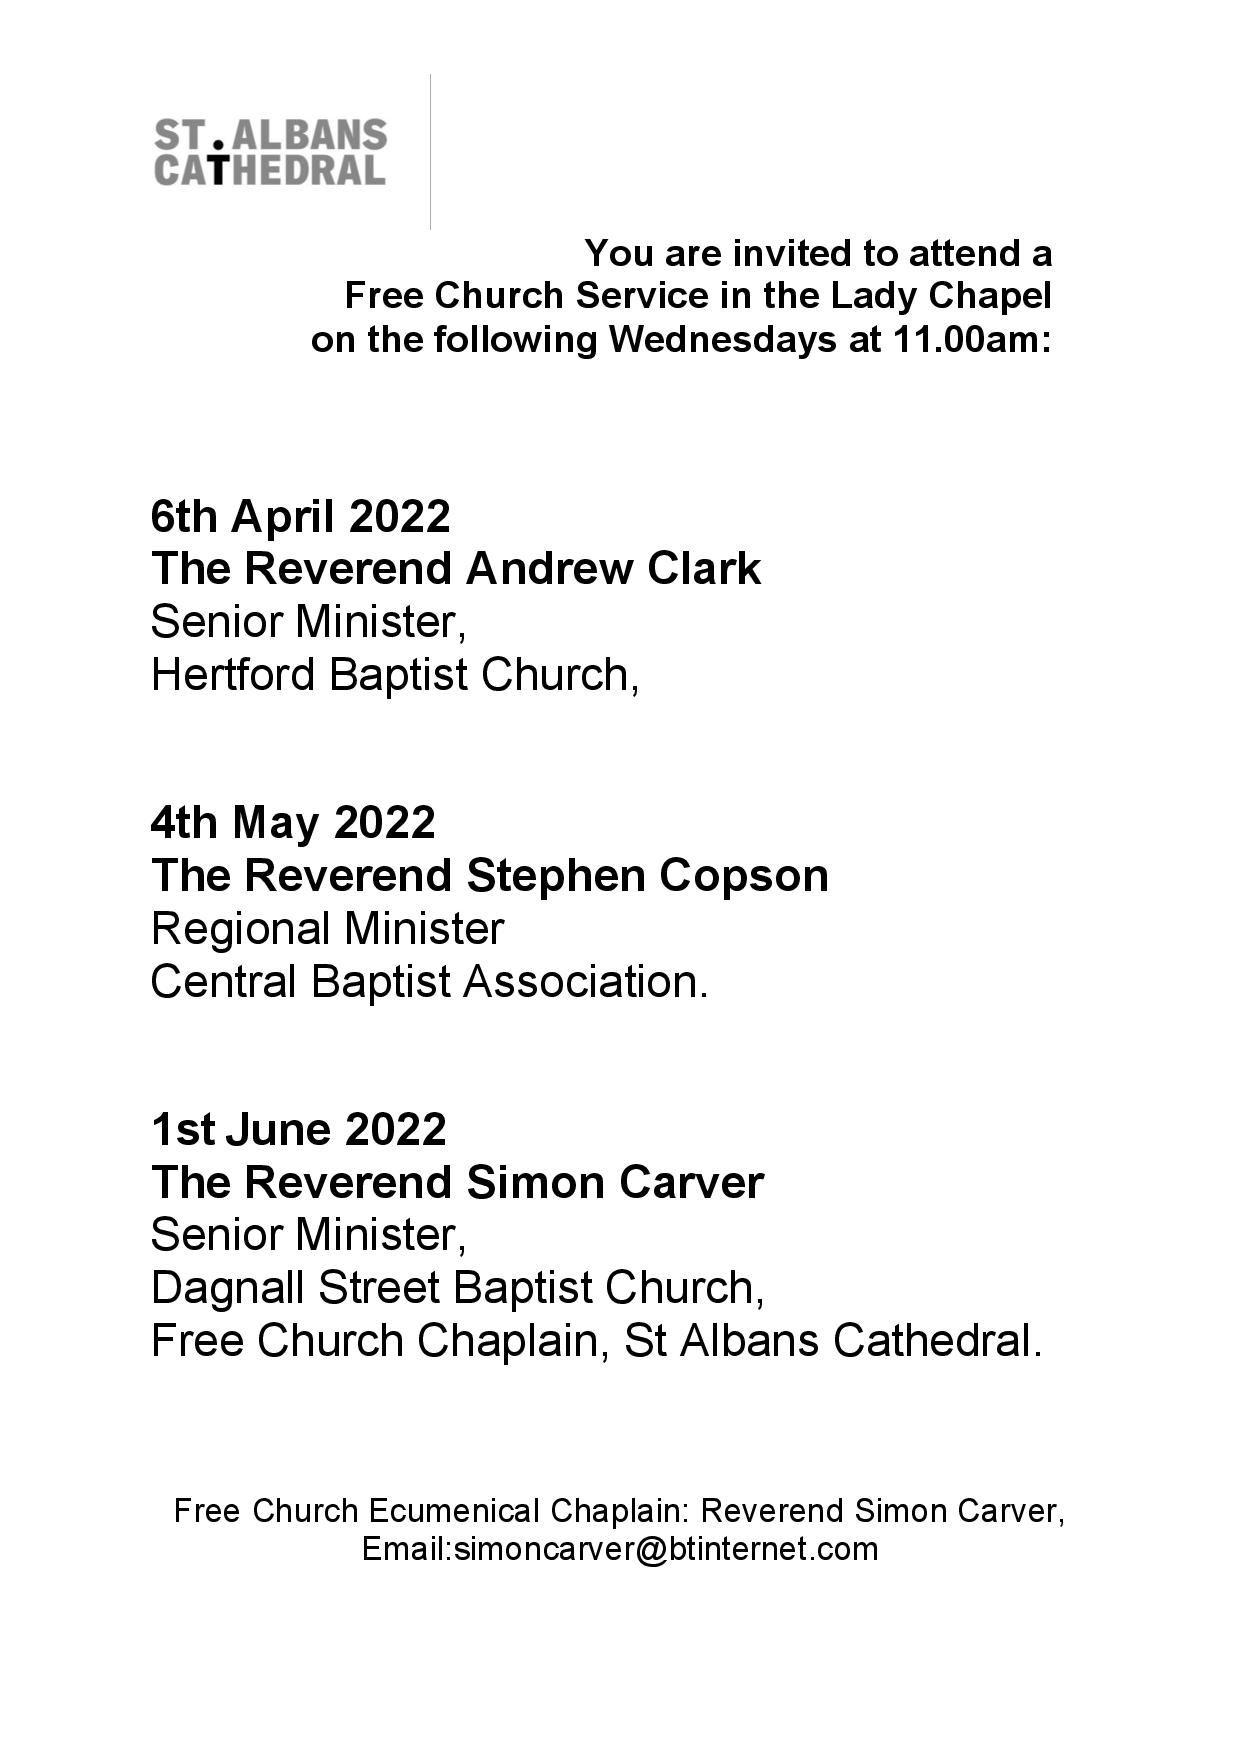 Free Church Services - 2022 Ap